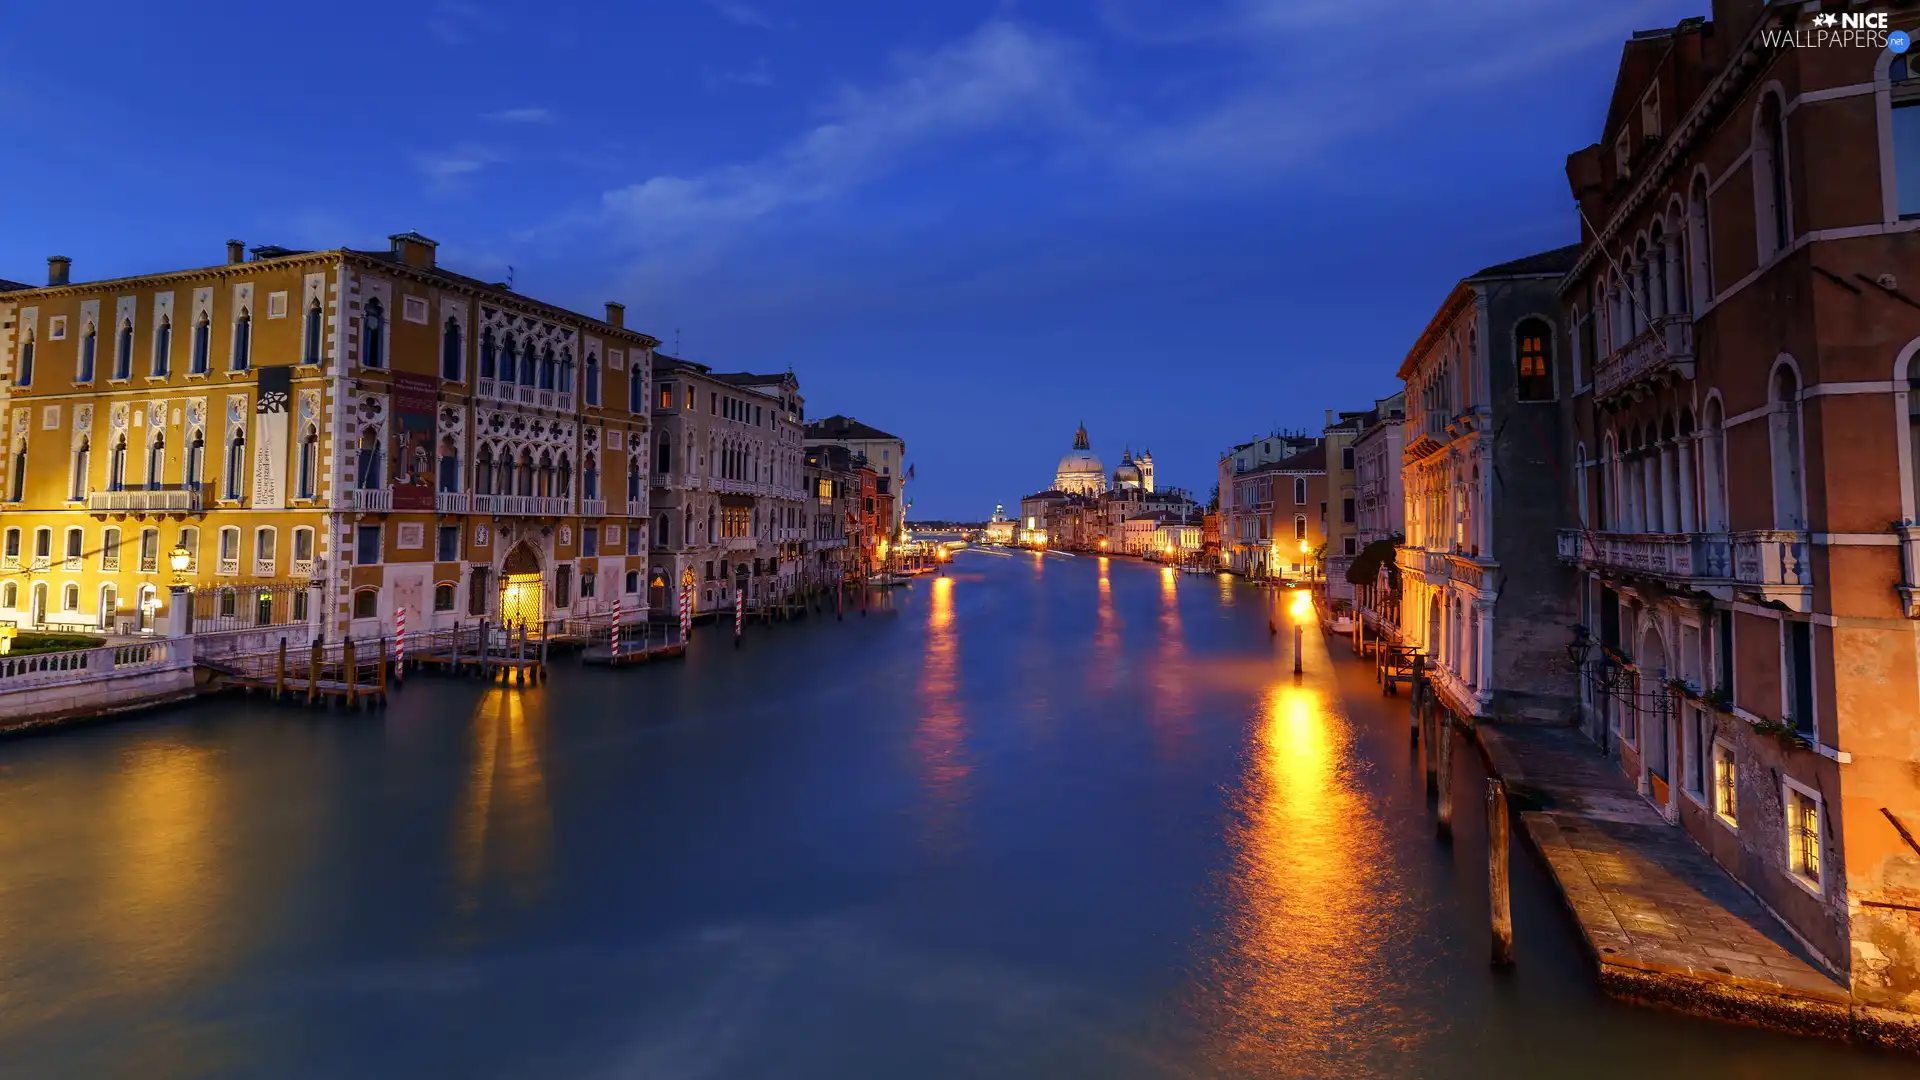 illuminated, Canal Grande, Venice, Night, canal, Houses, Italy